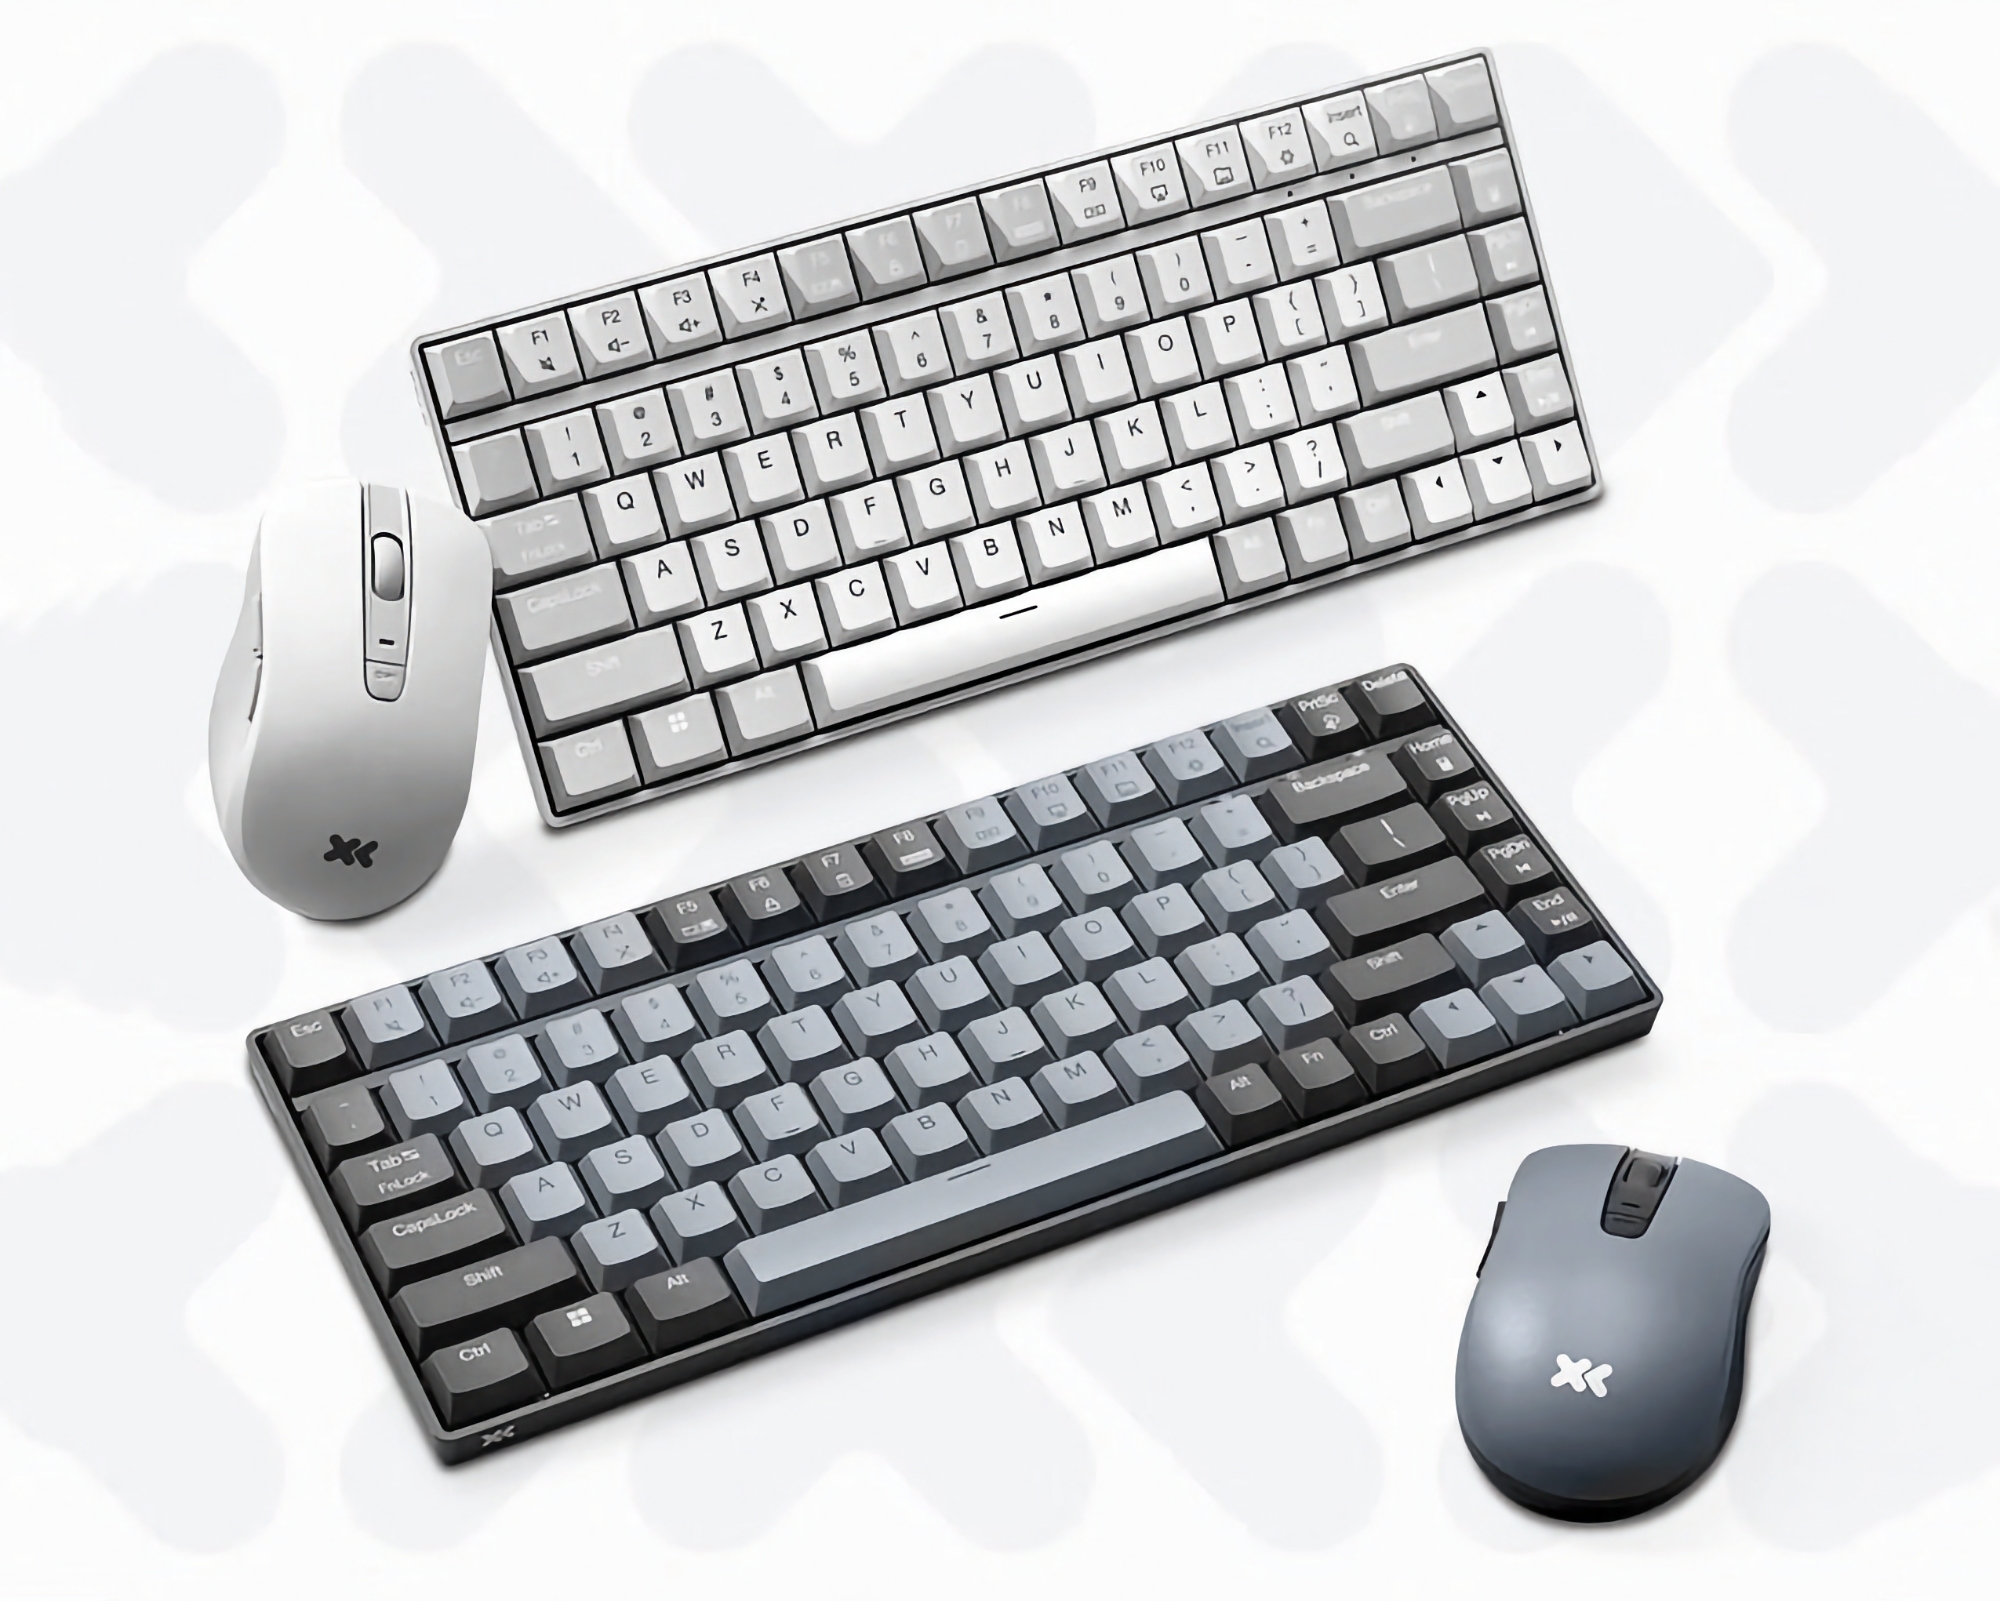 Budgetkit: Lenovo onthult een draadloos toetsenbord en muis voor $21